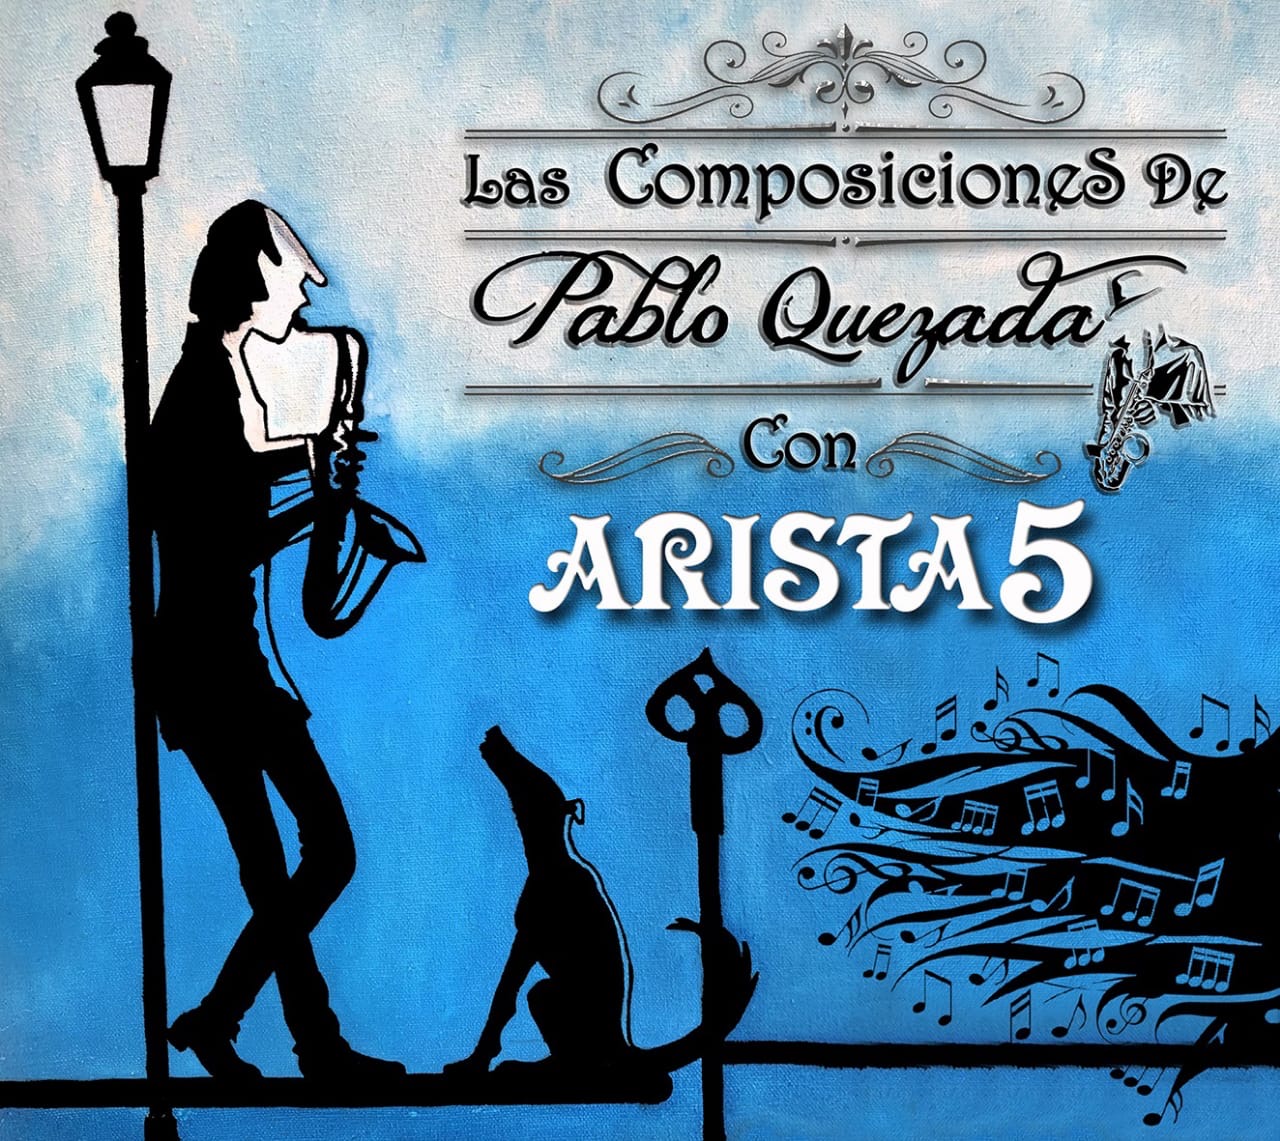 Las composiciones de Pablo Quezada con Arista 5